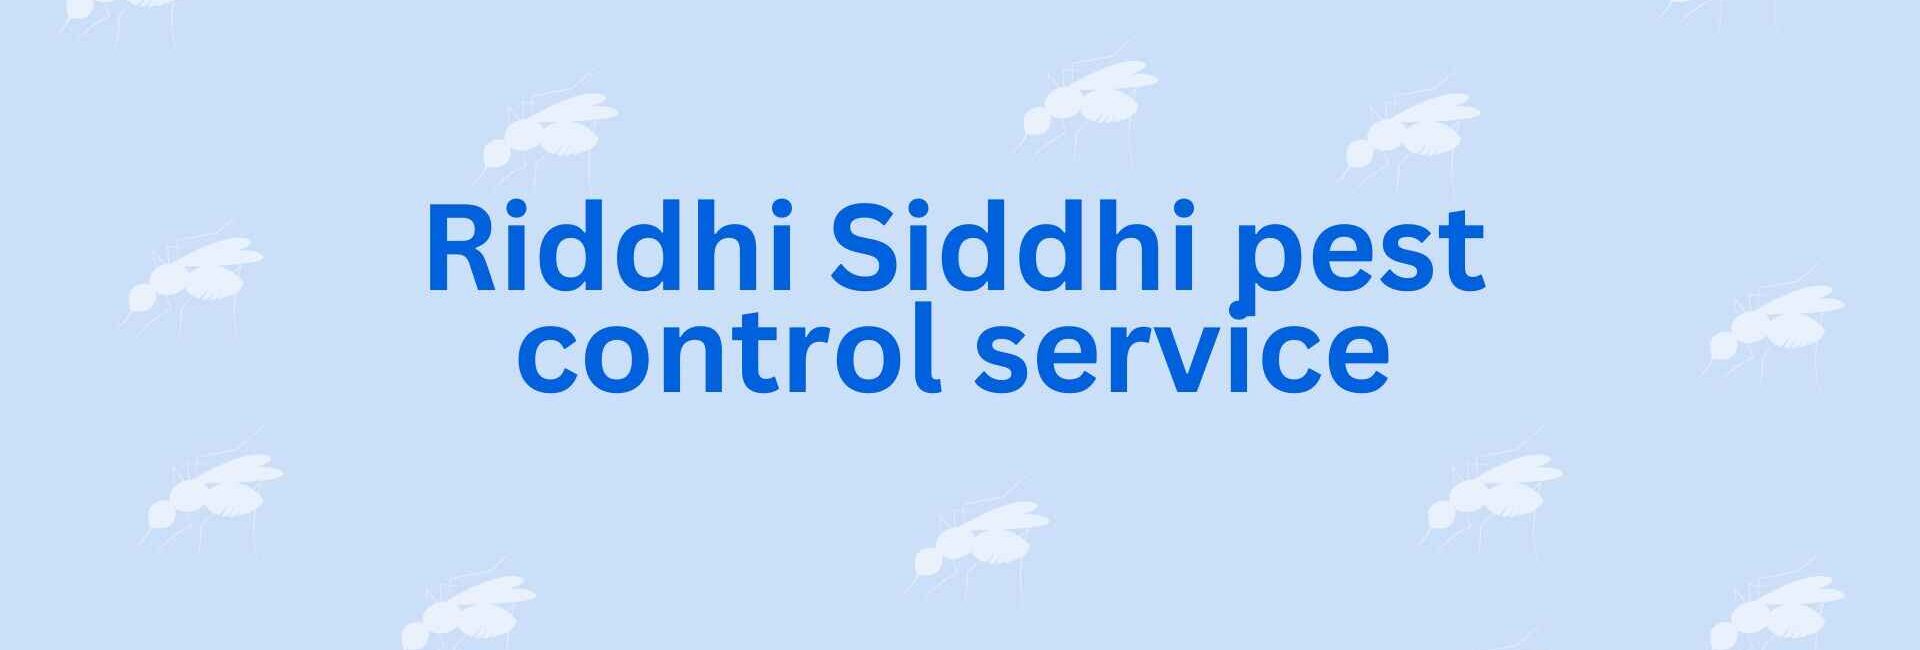 Riddhi Siddhi pest control service - Pest Control in Noida